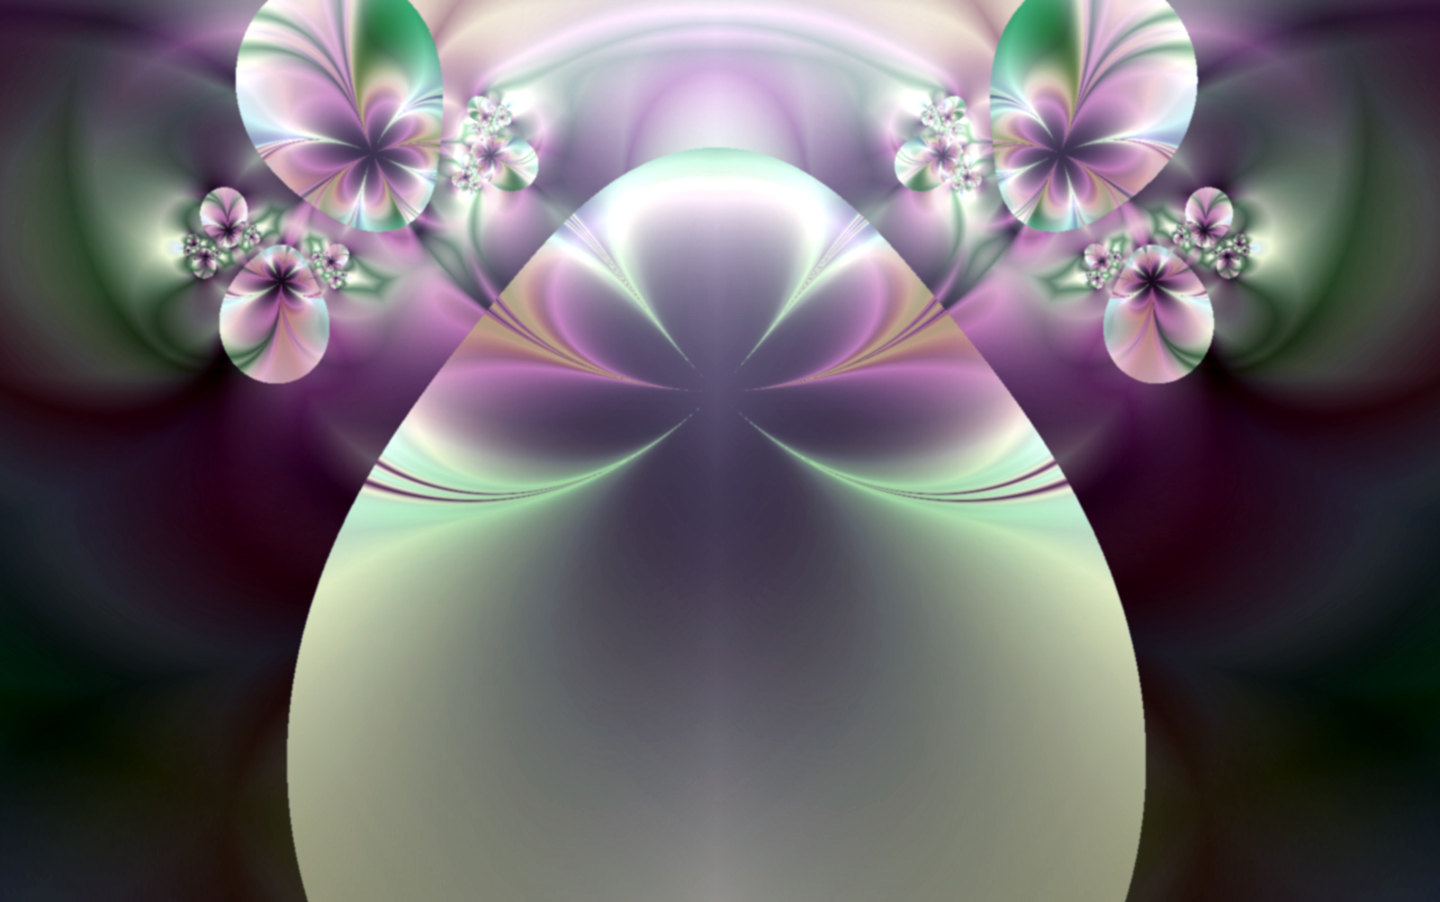 fractal_eggs.jpg